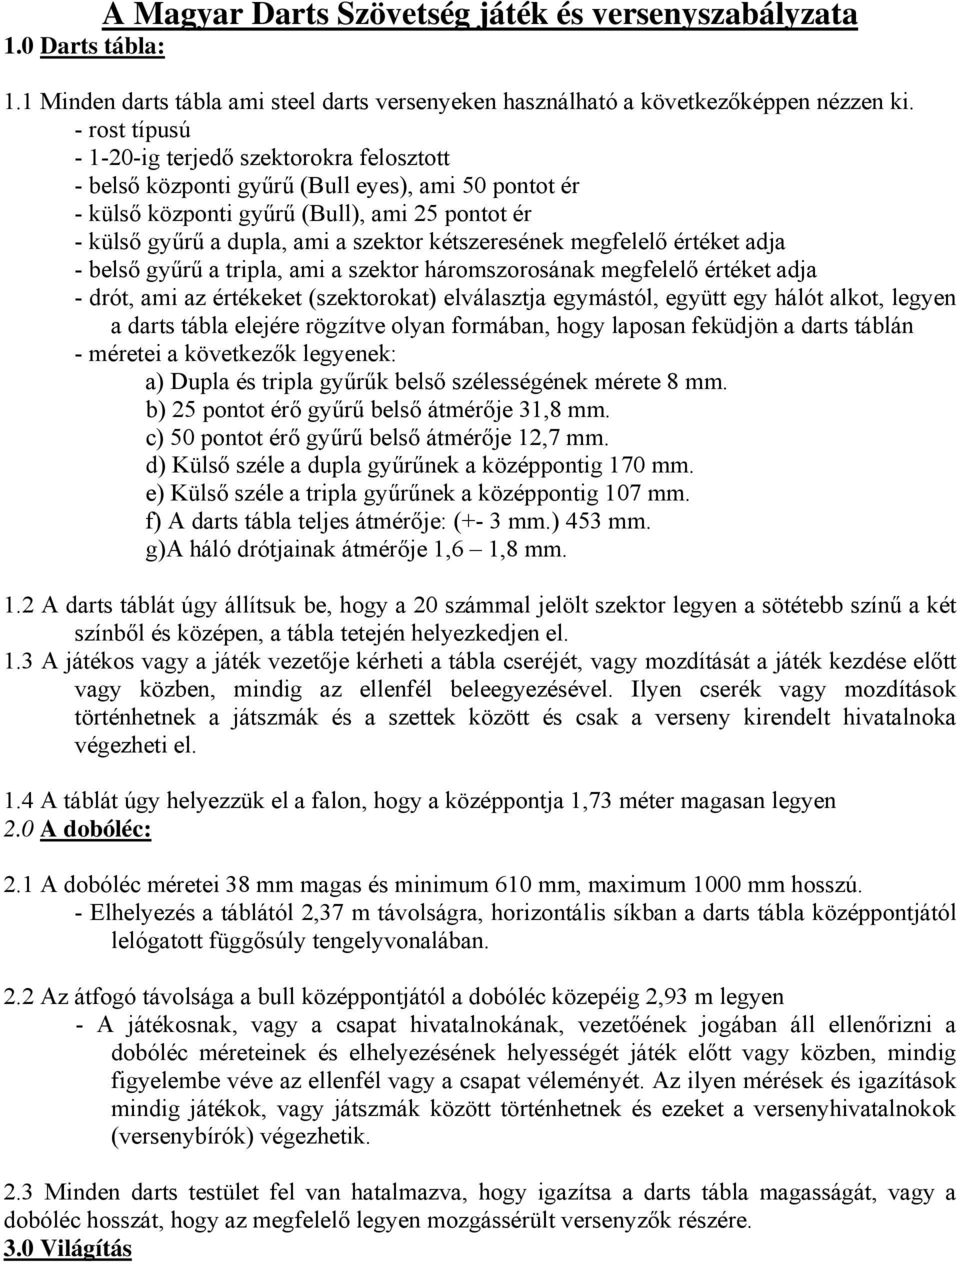 A Magyar Darts Szövetség játék és versenyszabályzata 1.0 Darts tábla: - PDF  Ingyenes letöltés